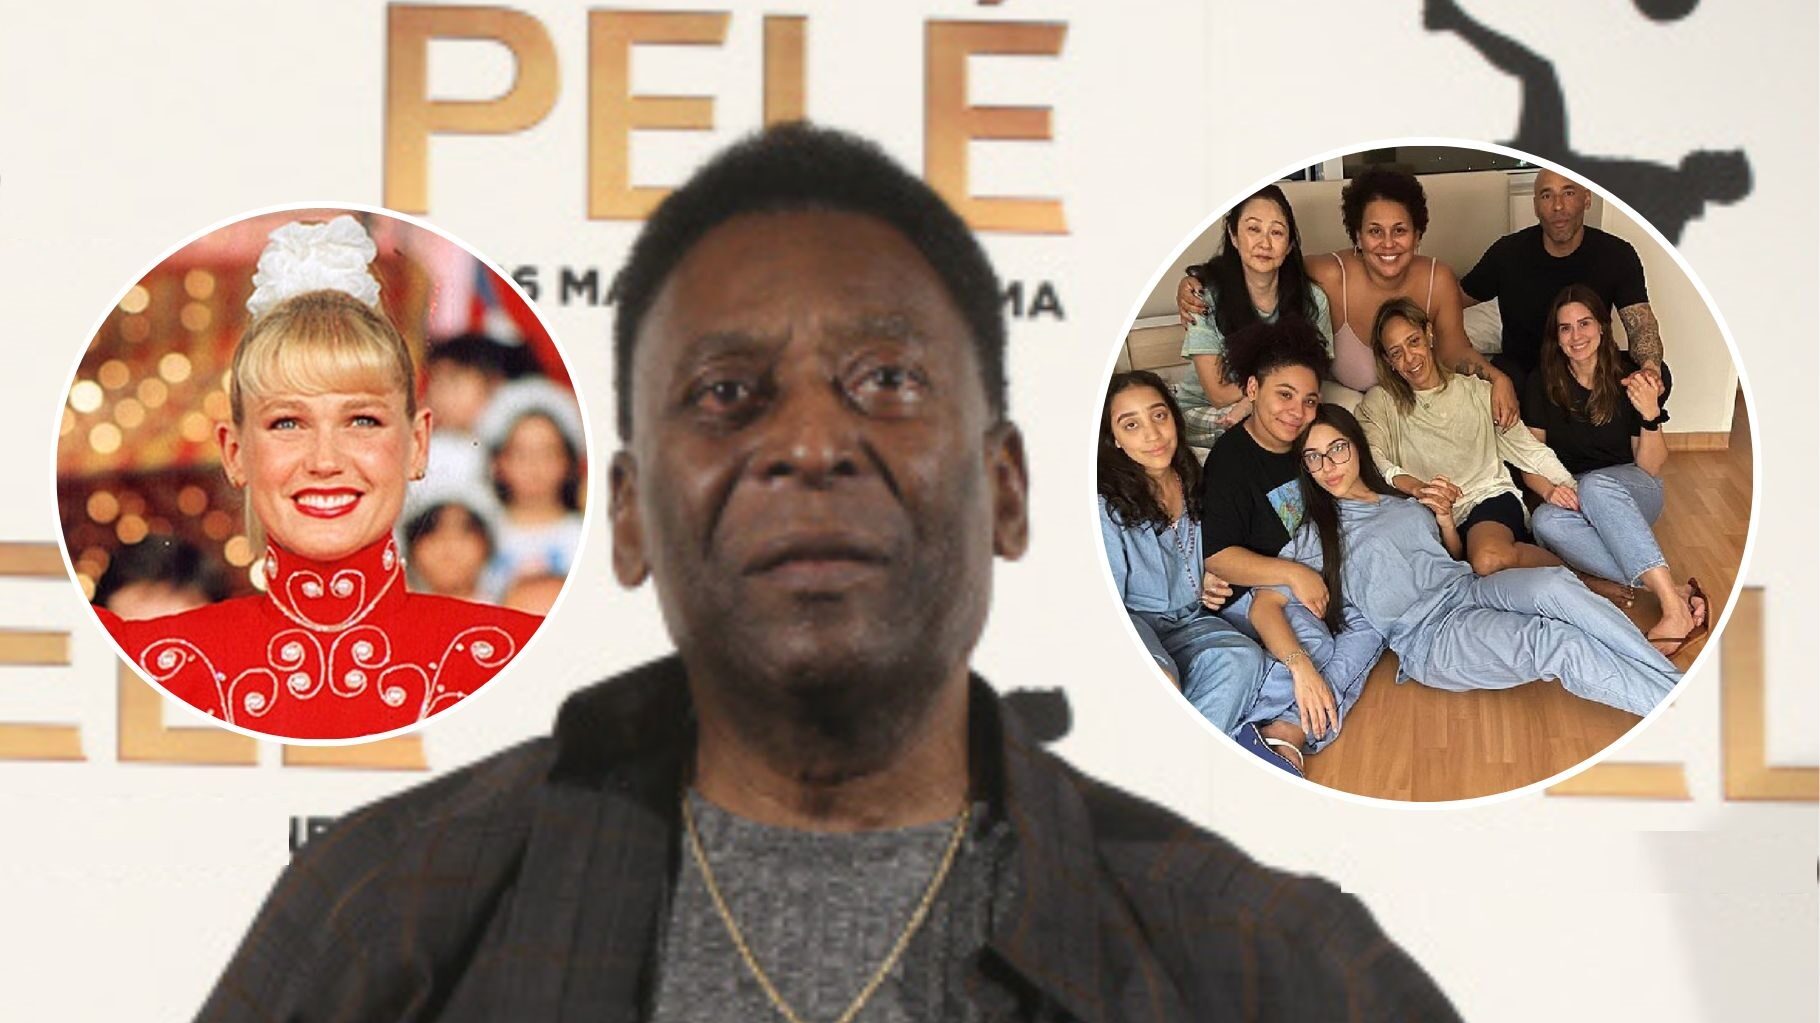 Las mujeres en la vida de Pelé, sus hijos, infidelidades y fortuna